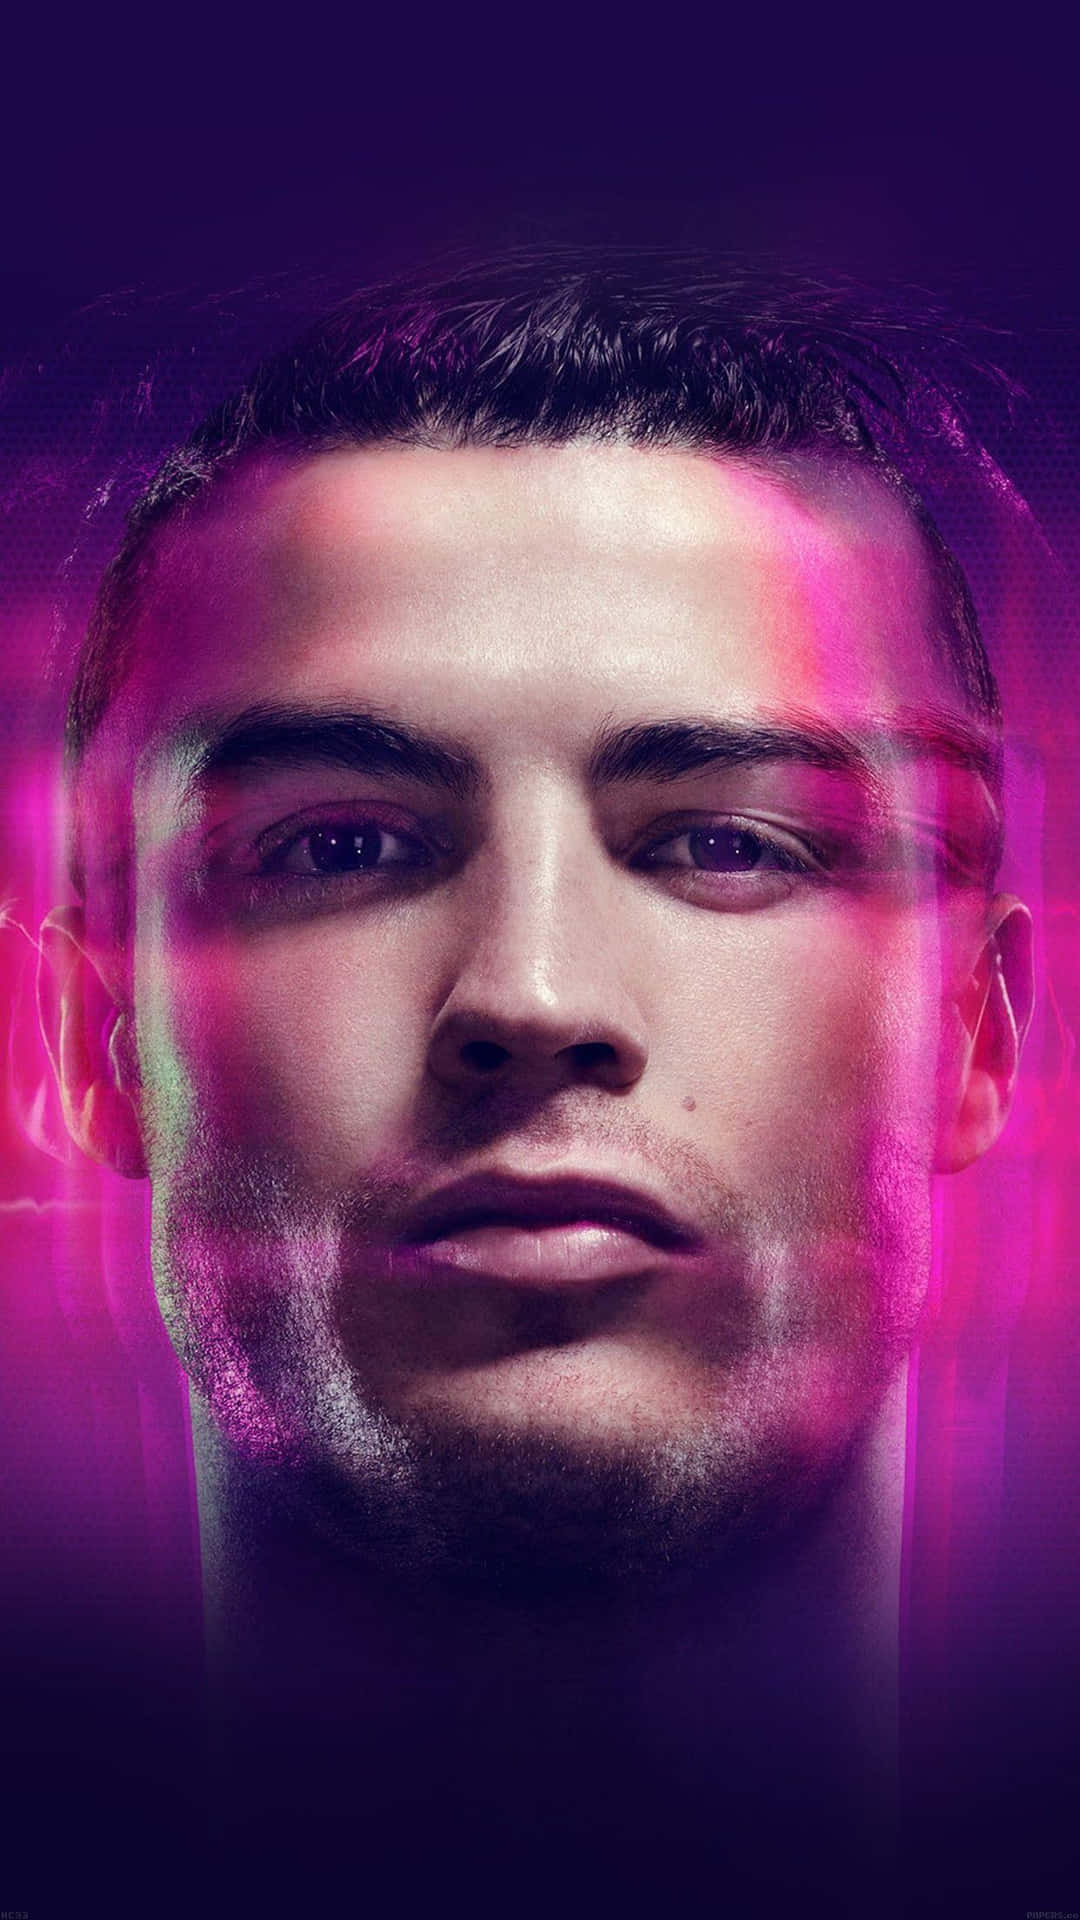 Ilprofessionista Della Squadra Di Calcio Cristiano Ronaldo Porta Emozione Ed Energia Al Gioco. Sfondo